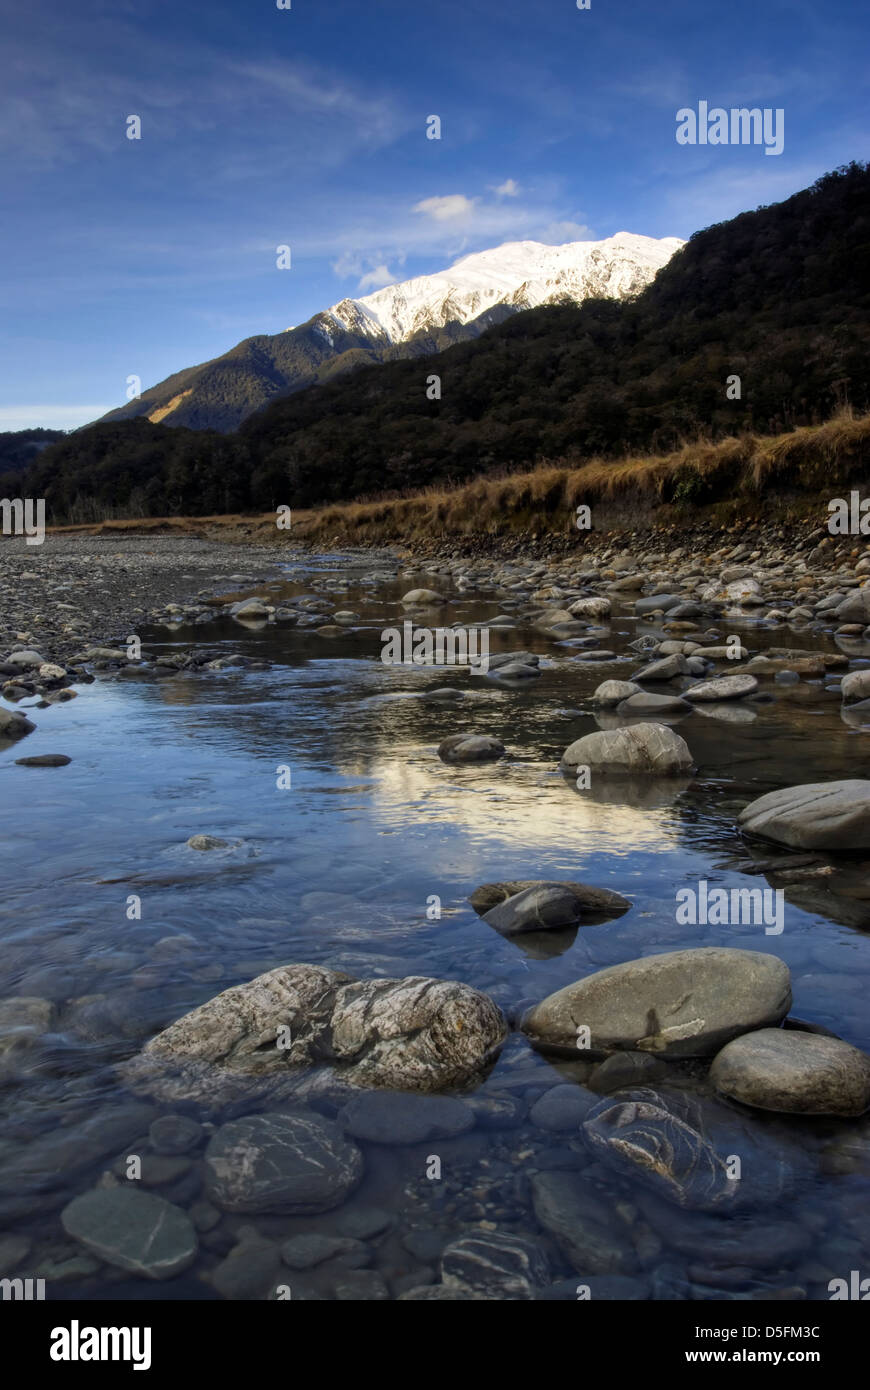 River Valley avec reflet de montagne enneigées. Alpes du Sud, Queenstown, île du Sud, Nouvelle-Zélande Banque D'Images